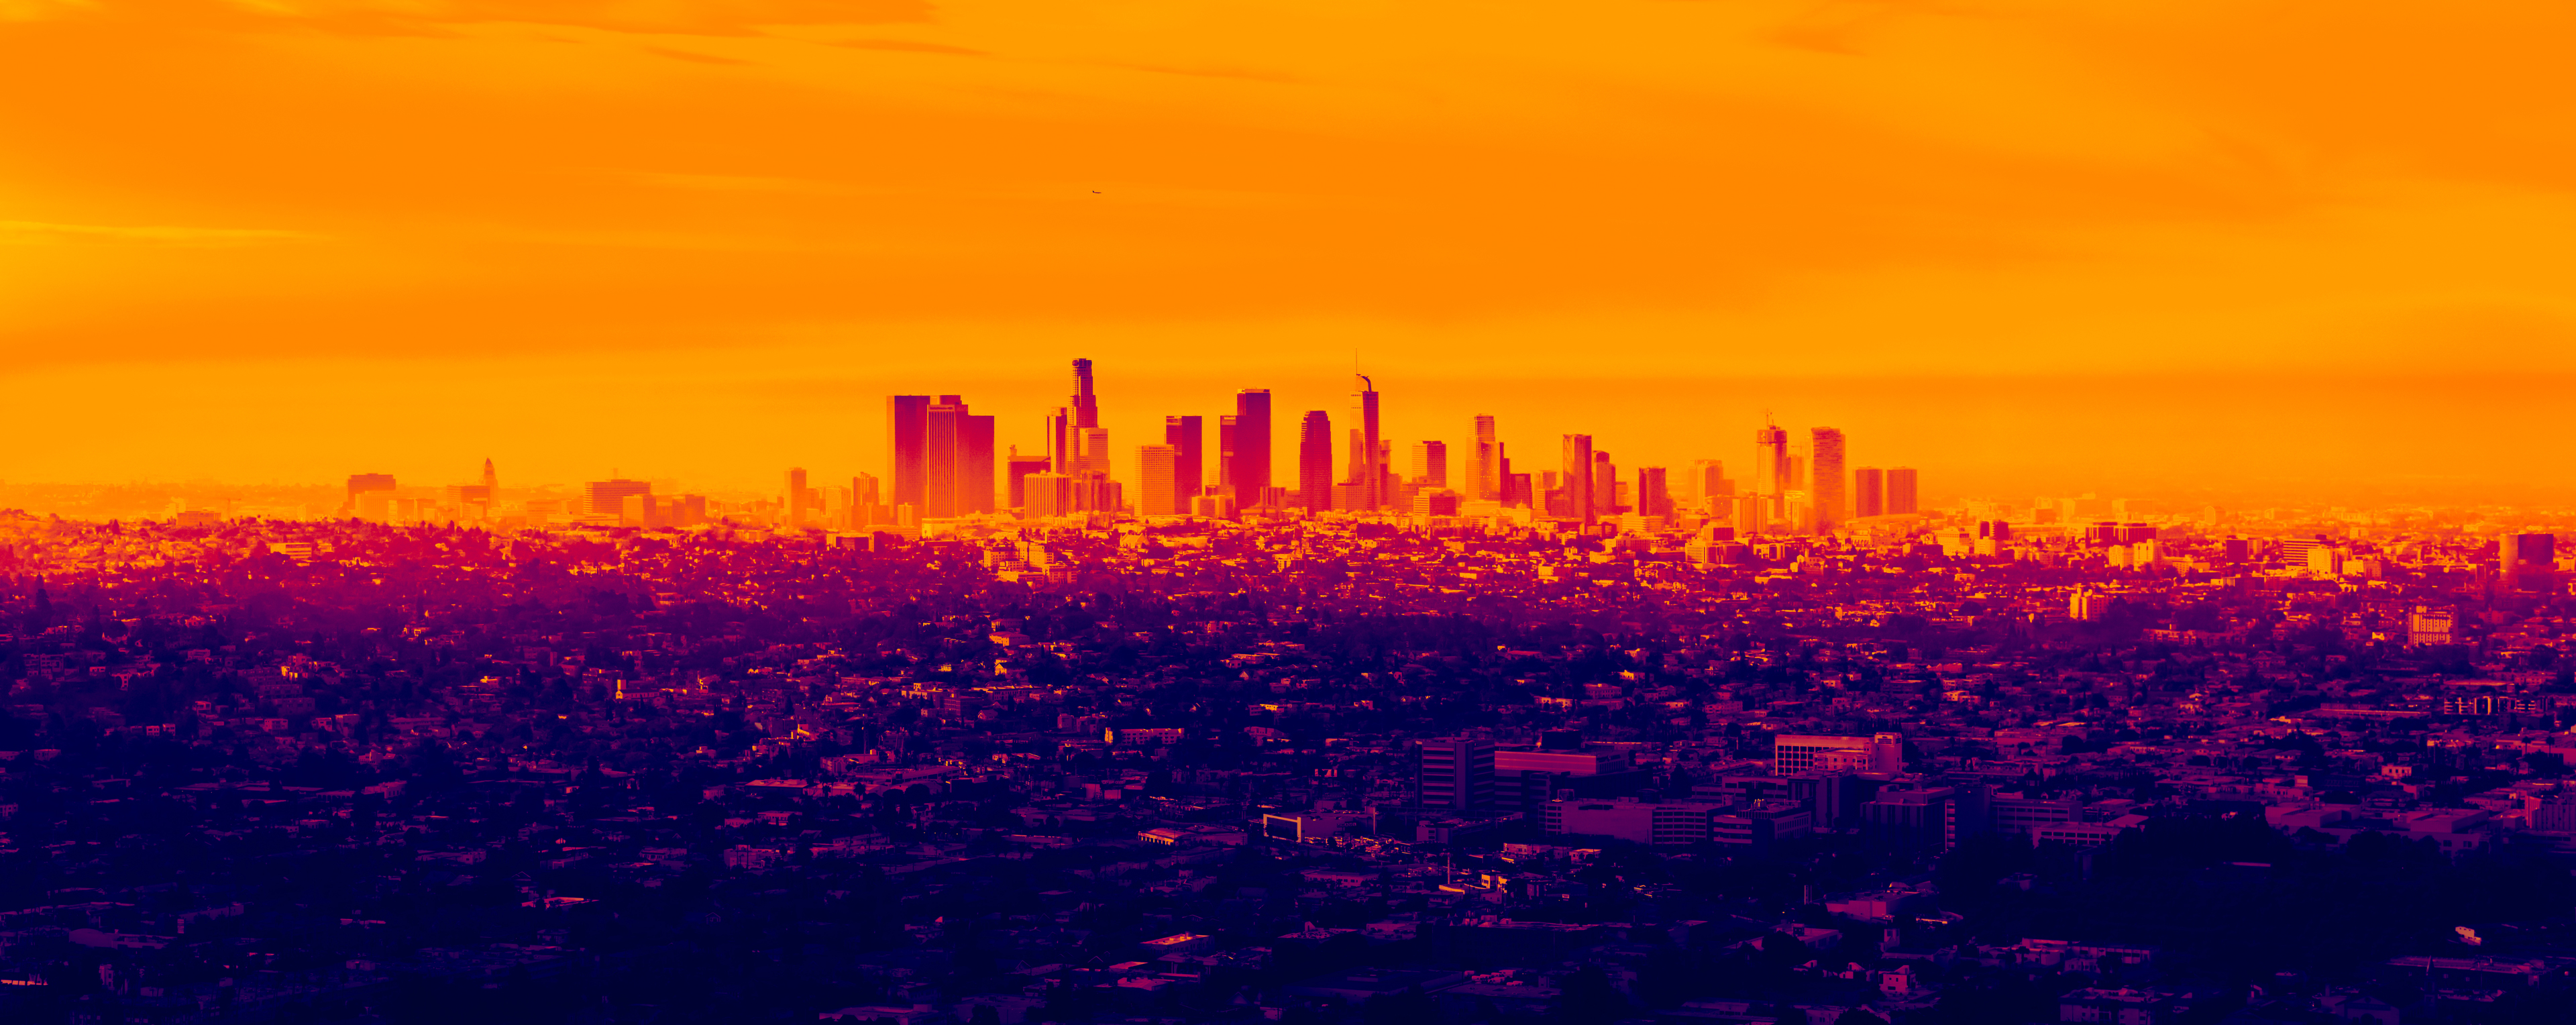 La Cityscape In Infrared Wallpaper HD City 4k Image